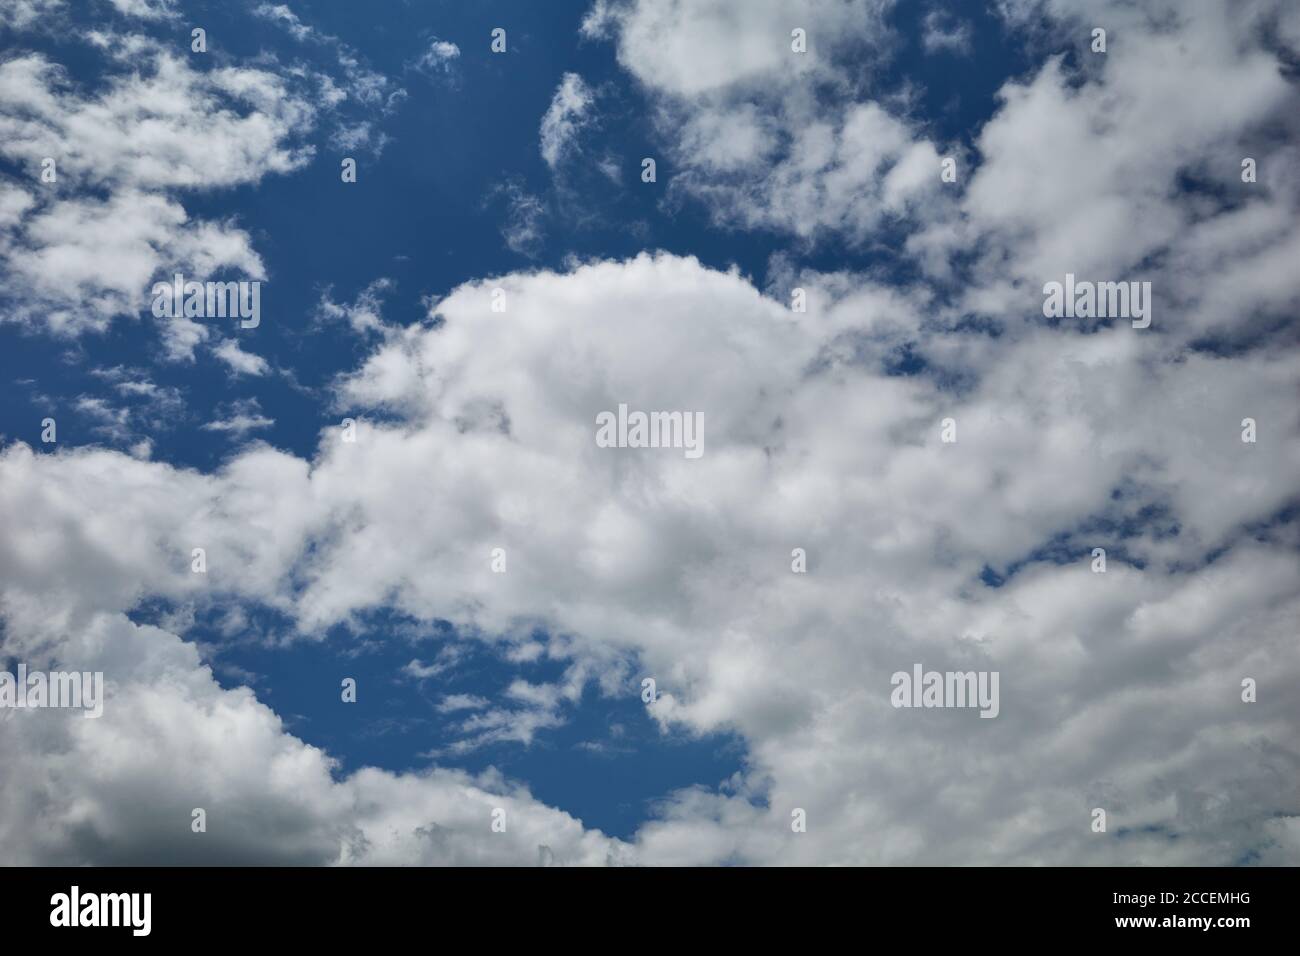 Feld der Kumuluswolken in blauem Himmel. Hintergrund für Vorhersage und Meteorologie Illustration. Geschwollene, baumwollartige, flauschige Cirrus-Cumuli-Wolken. Stockfoto